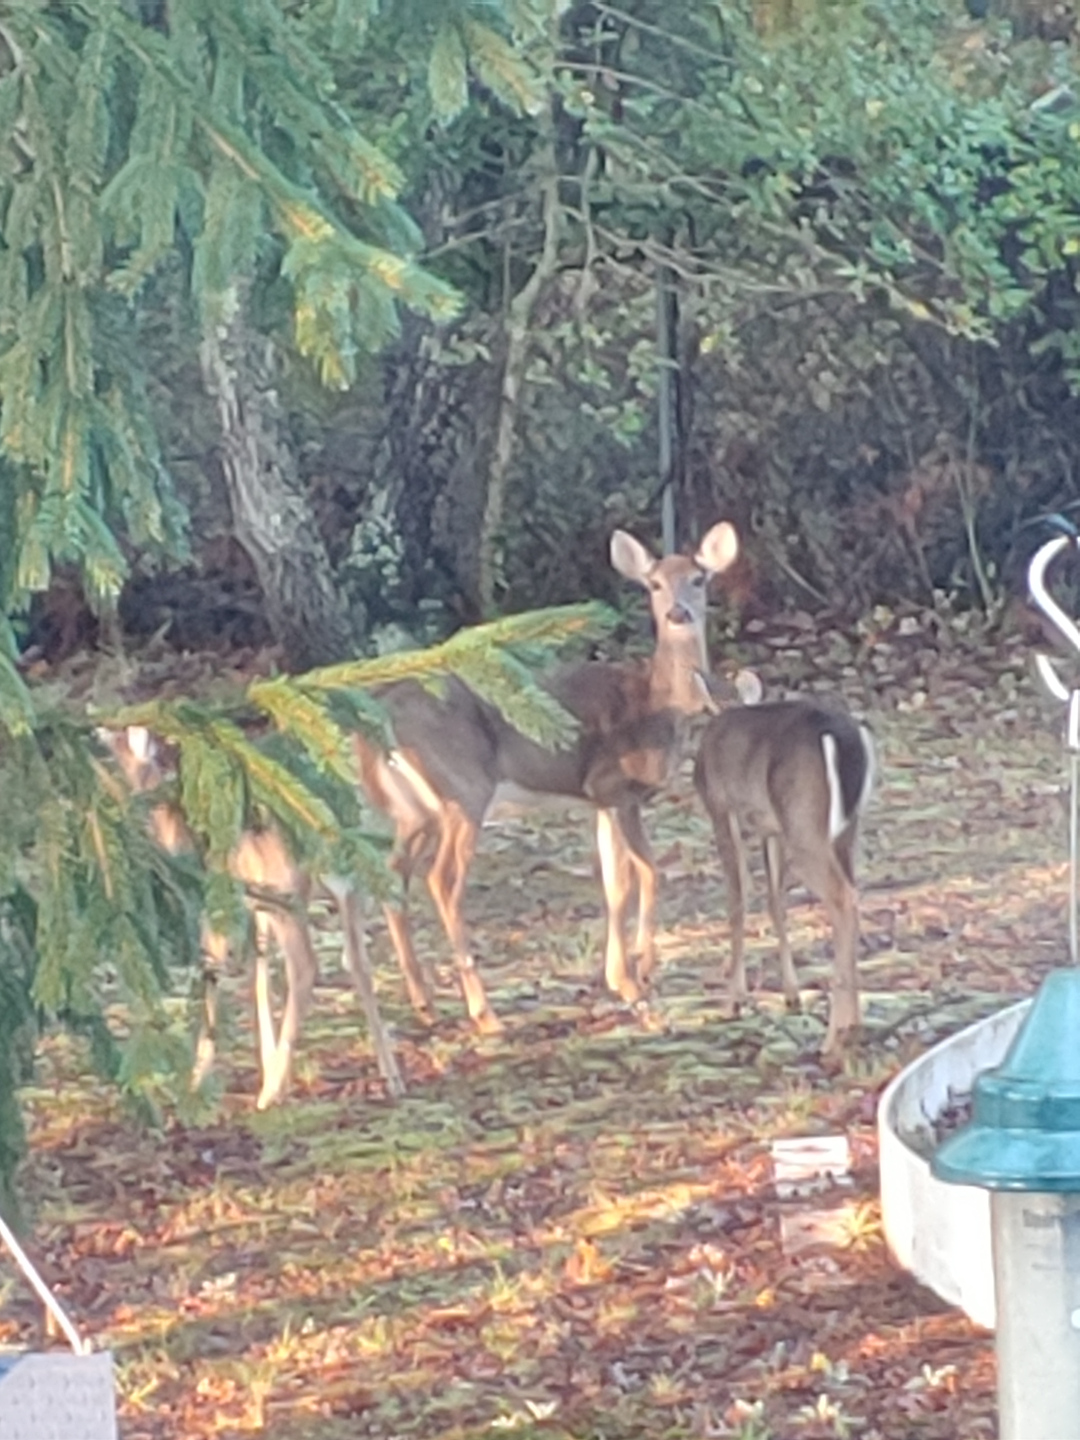 deer in the yard